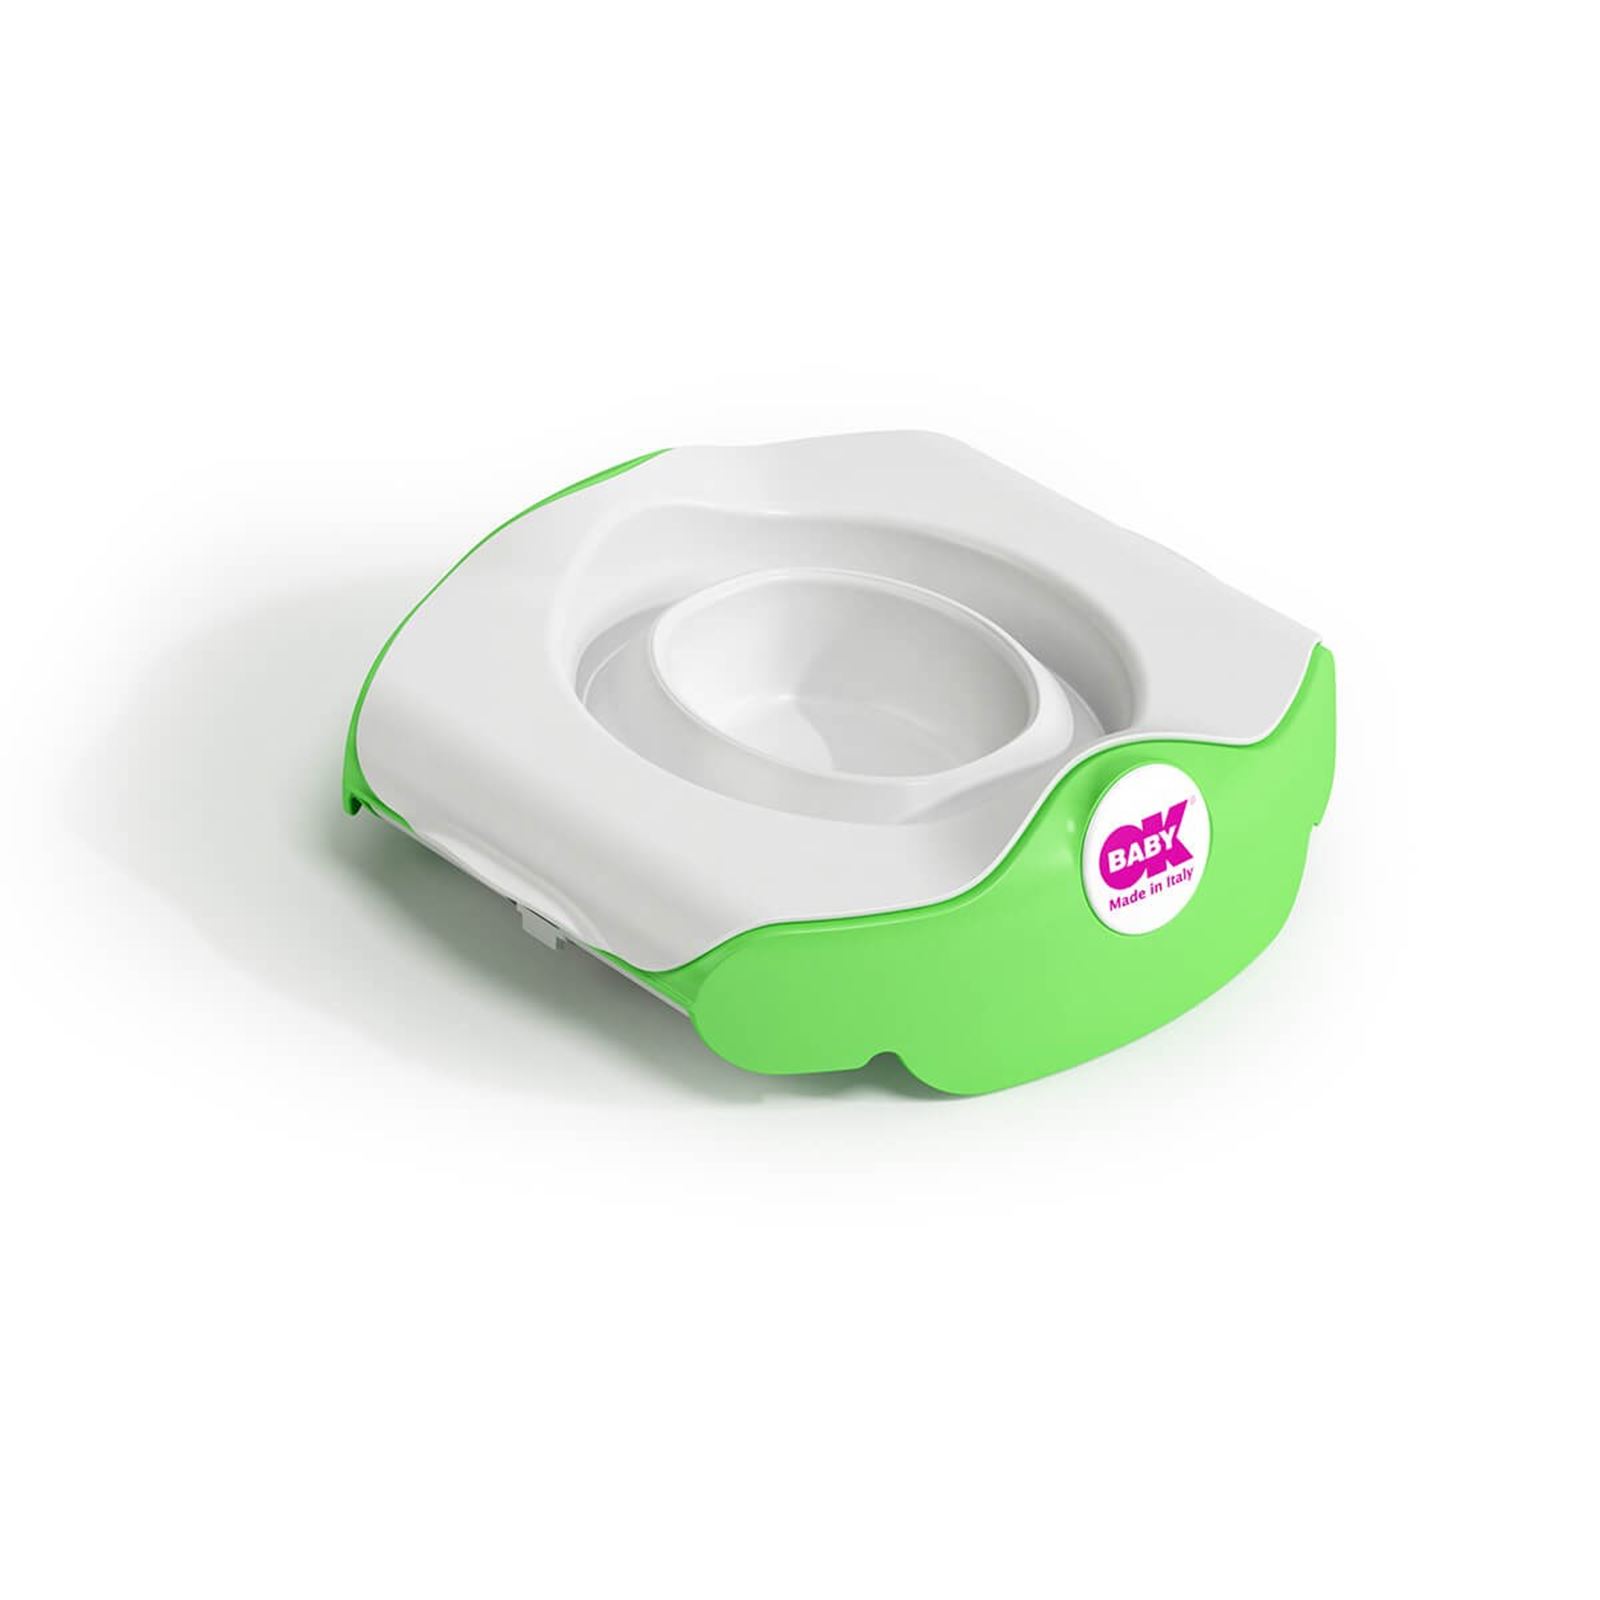 OkBaby Roady Katlanabilir Oturak & Klozet Adaptörü / Yeşil